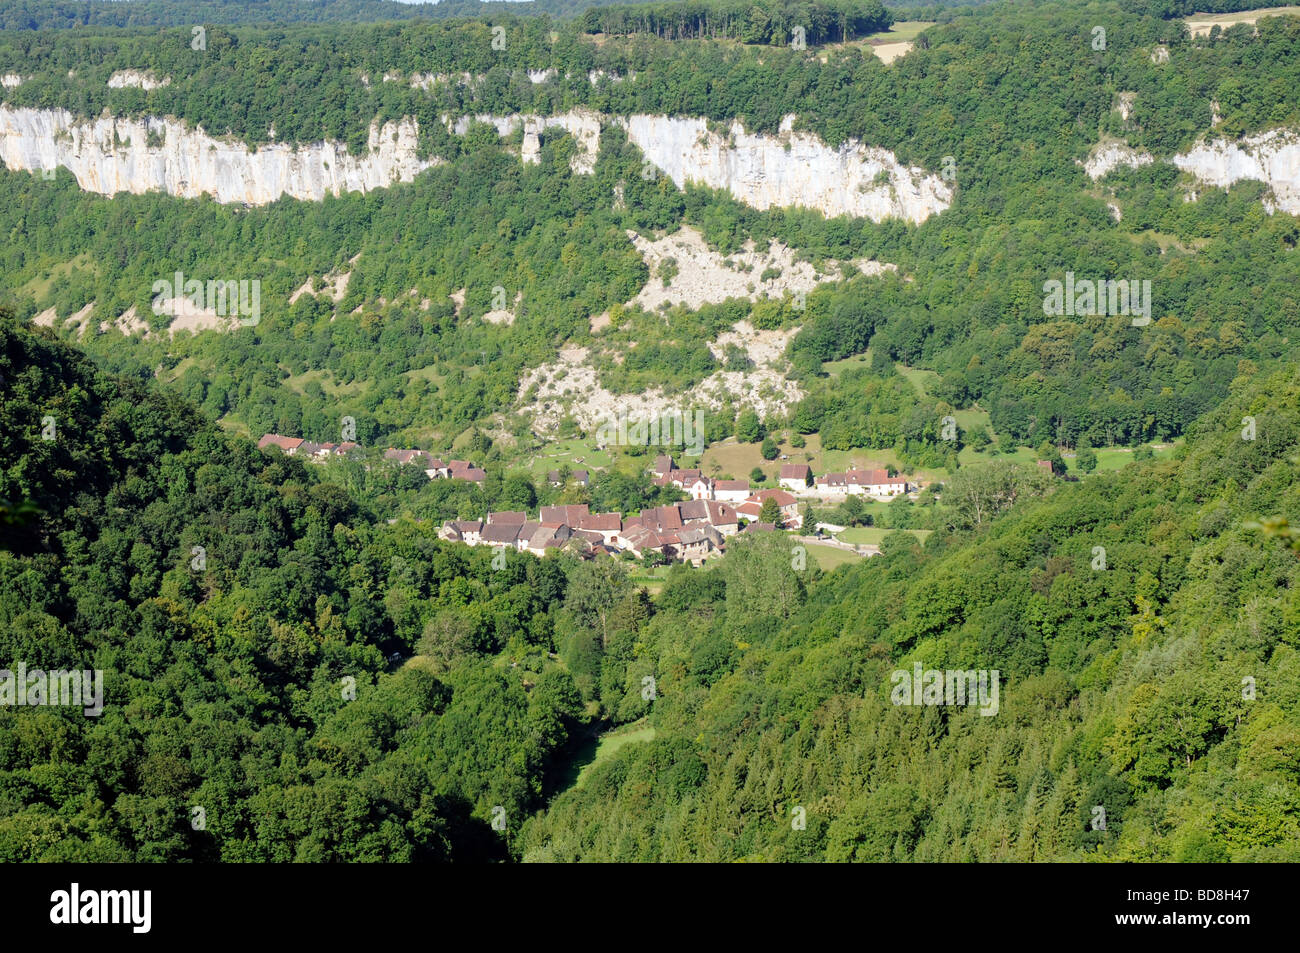 Villaggio francese di La Baume les messieurs del Cirque de Baume, una formazione di calcare causate da un ghiacciaio. Jura, Francia. Foto Stock